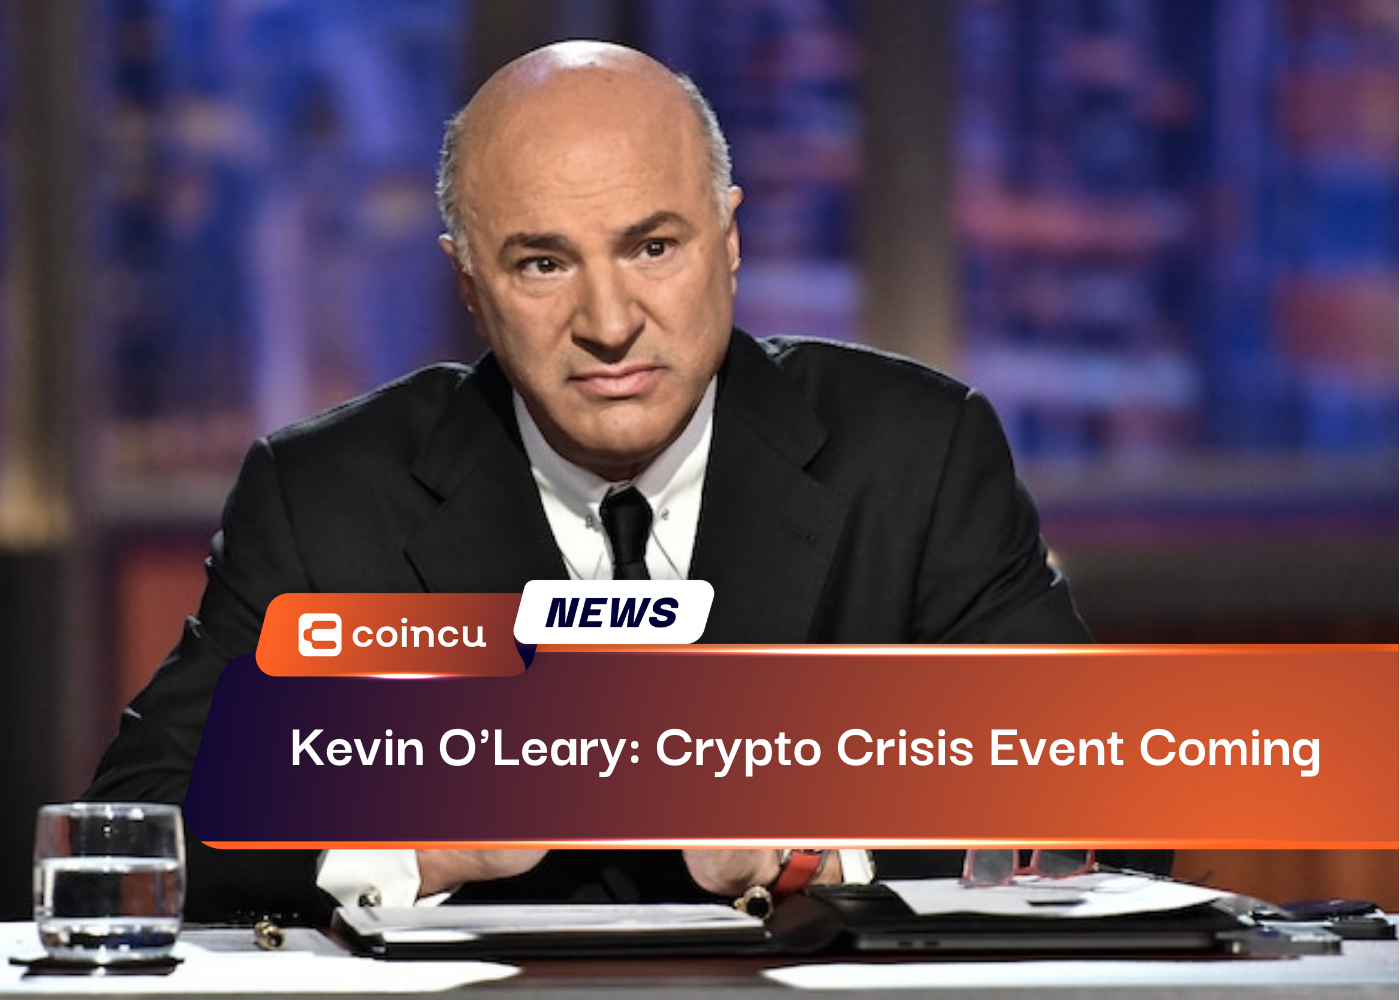 Kevin O'Leary: evento de crise criptográfica chegando